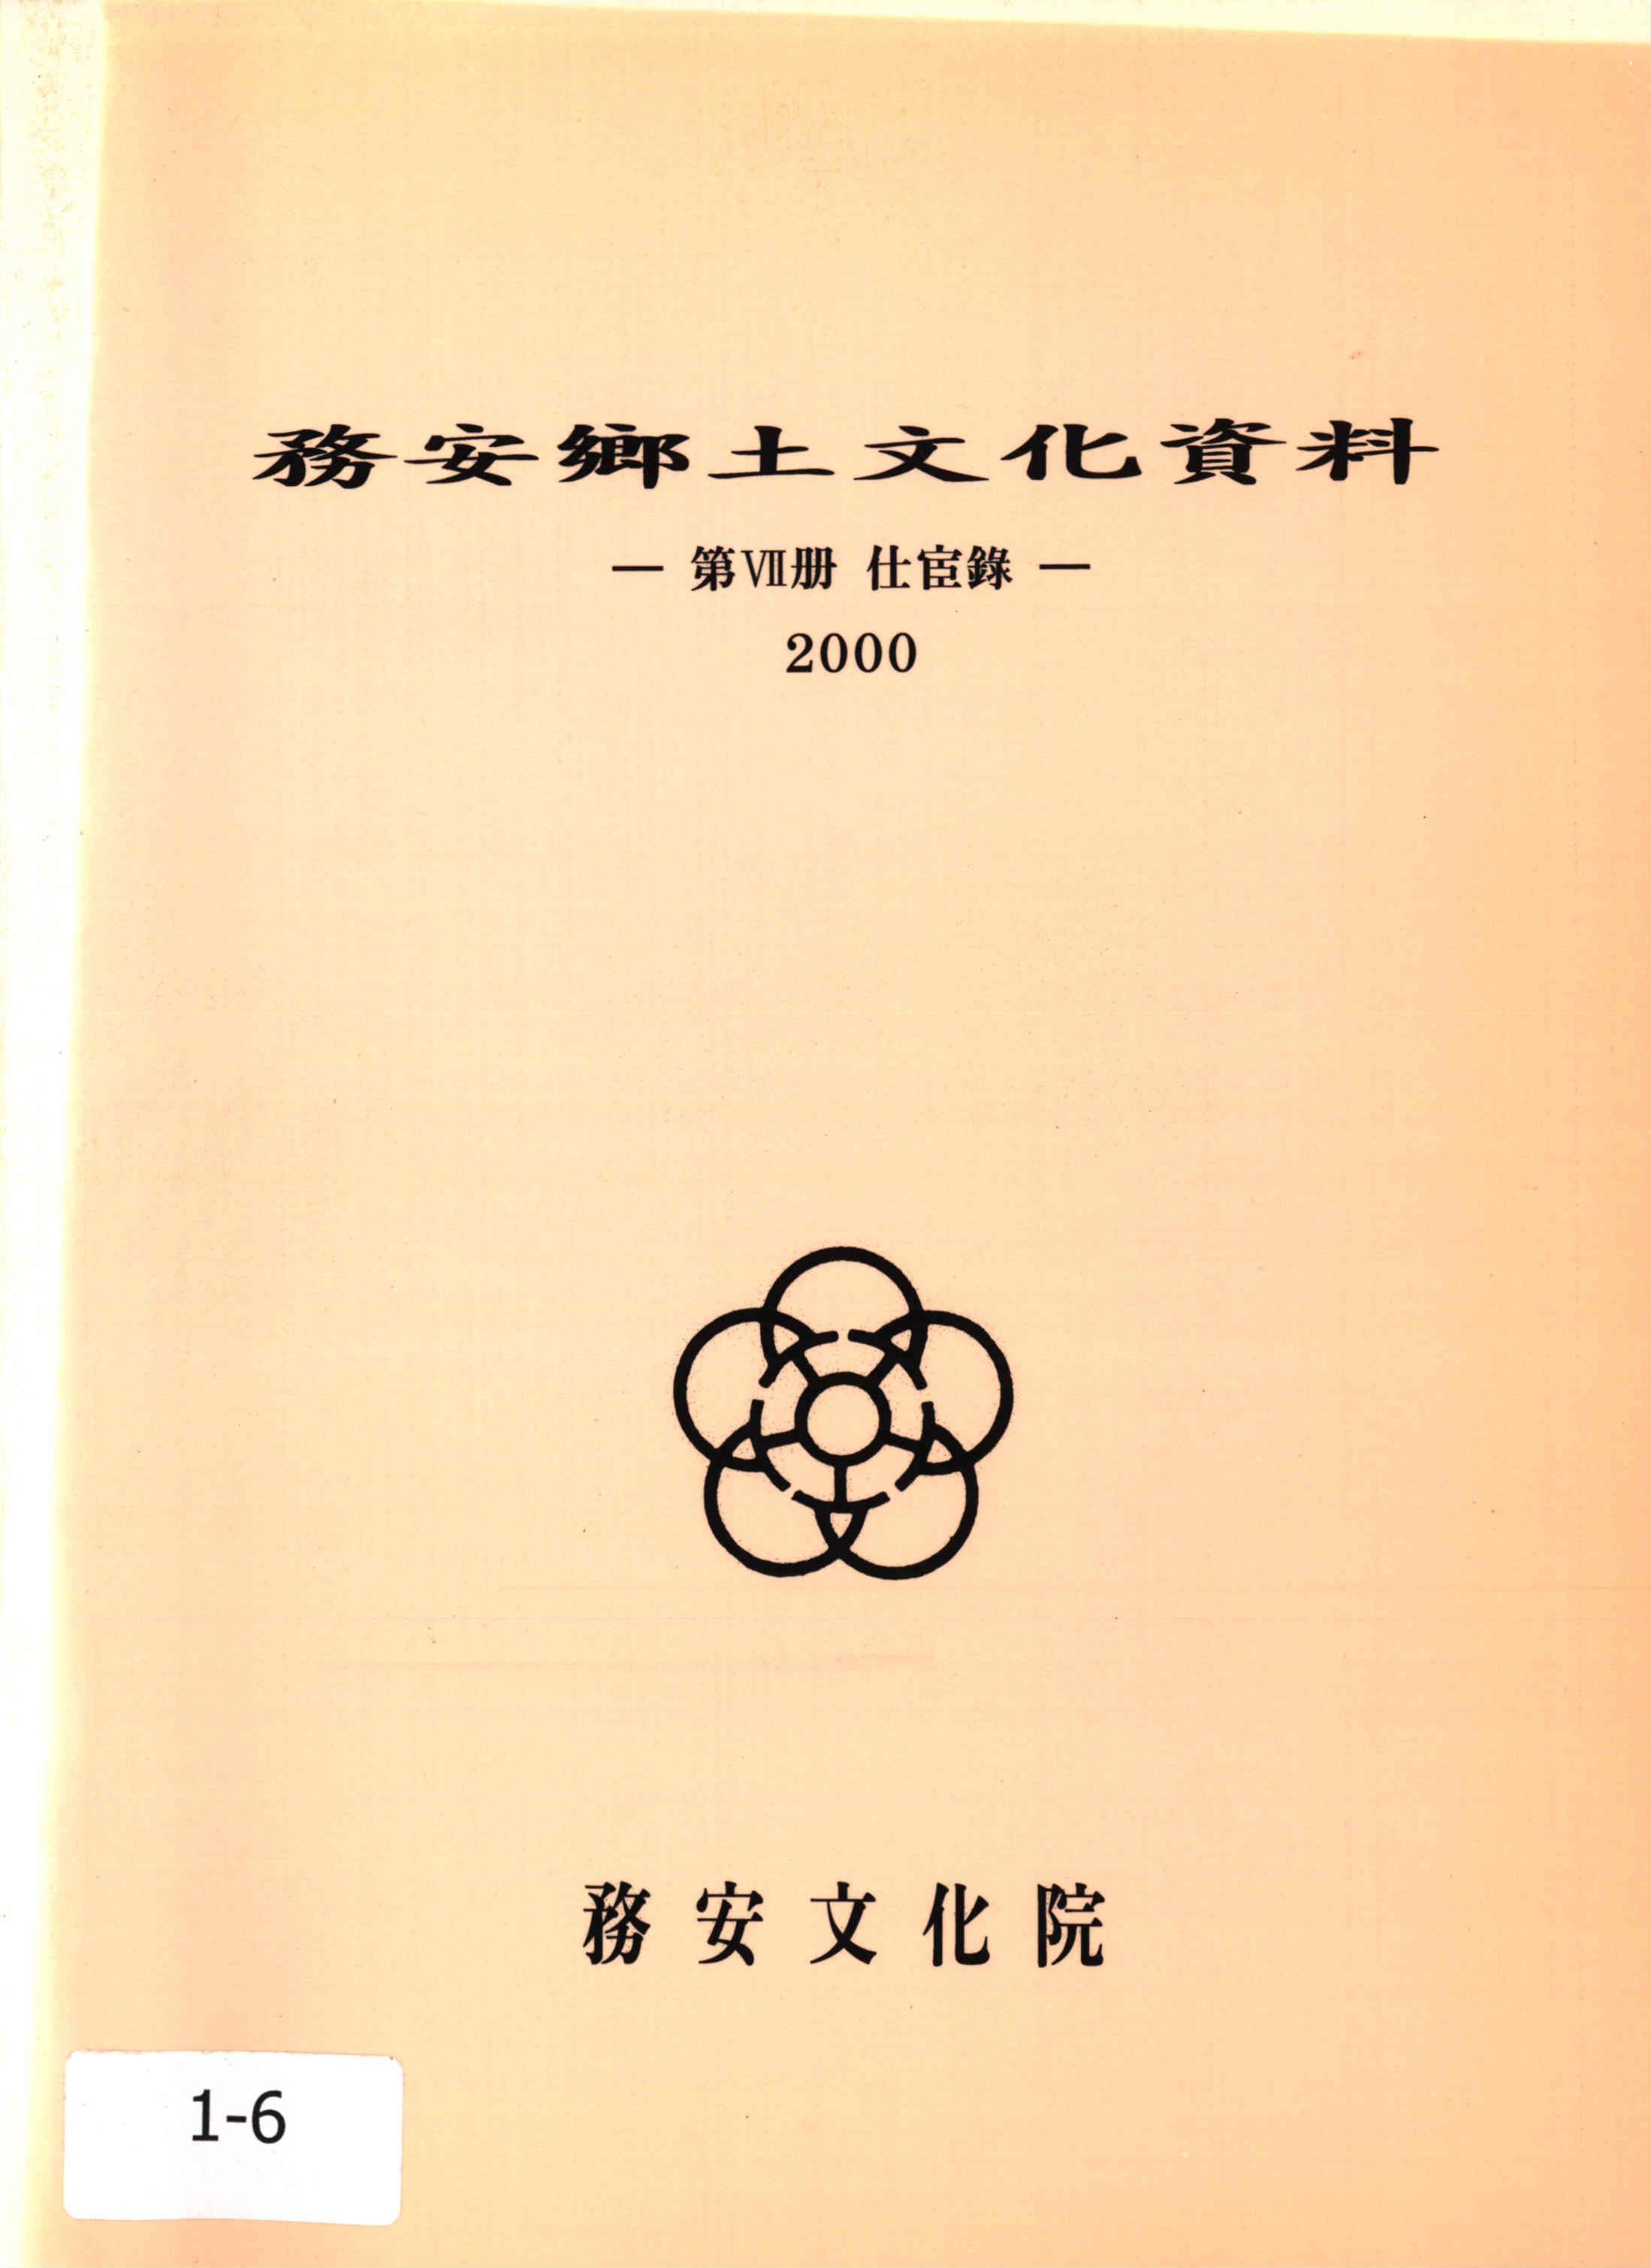 務安鄕土文化資料2000 (무안향토문화자료2000)